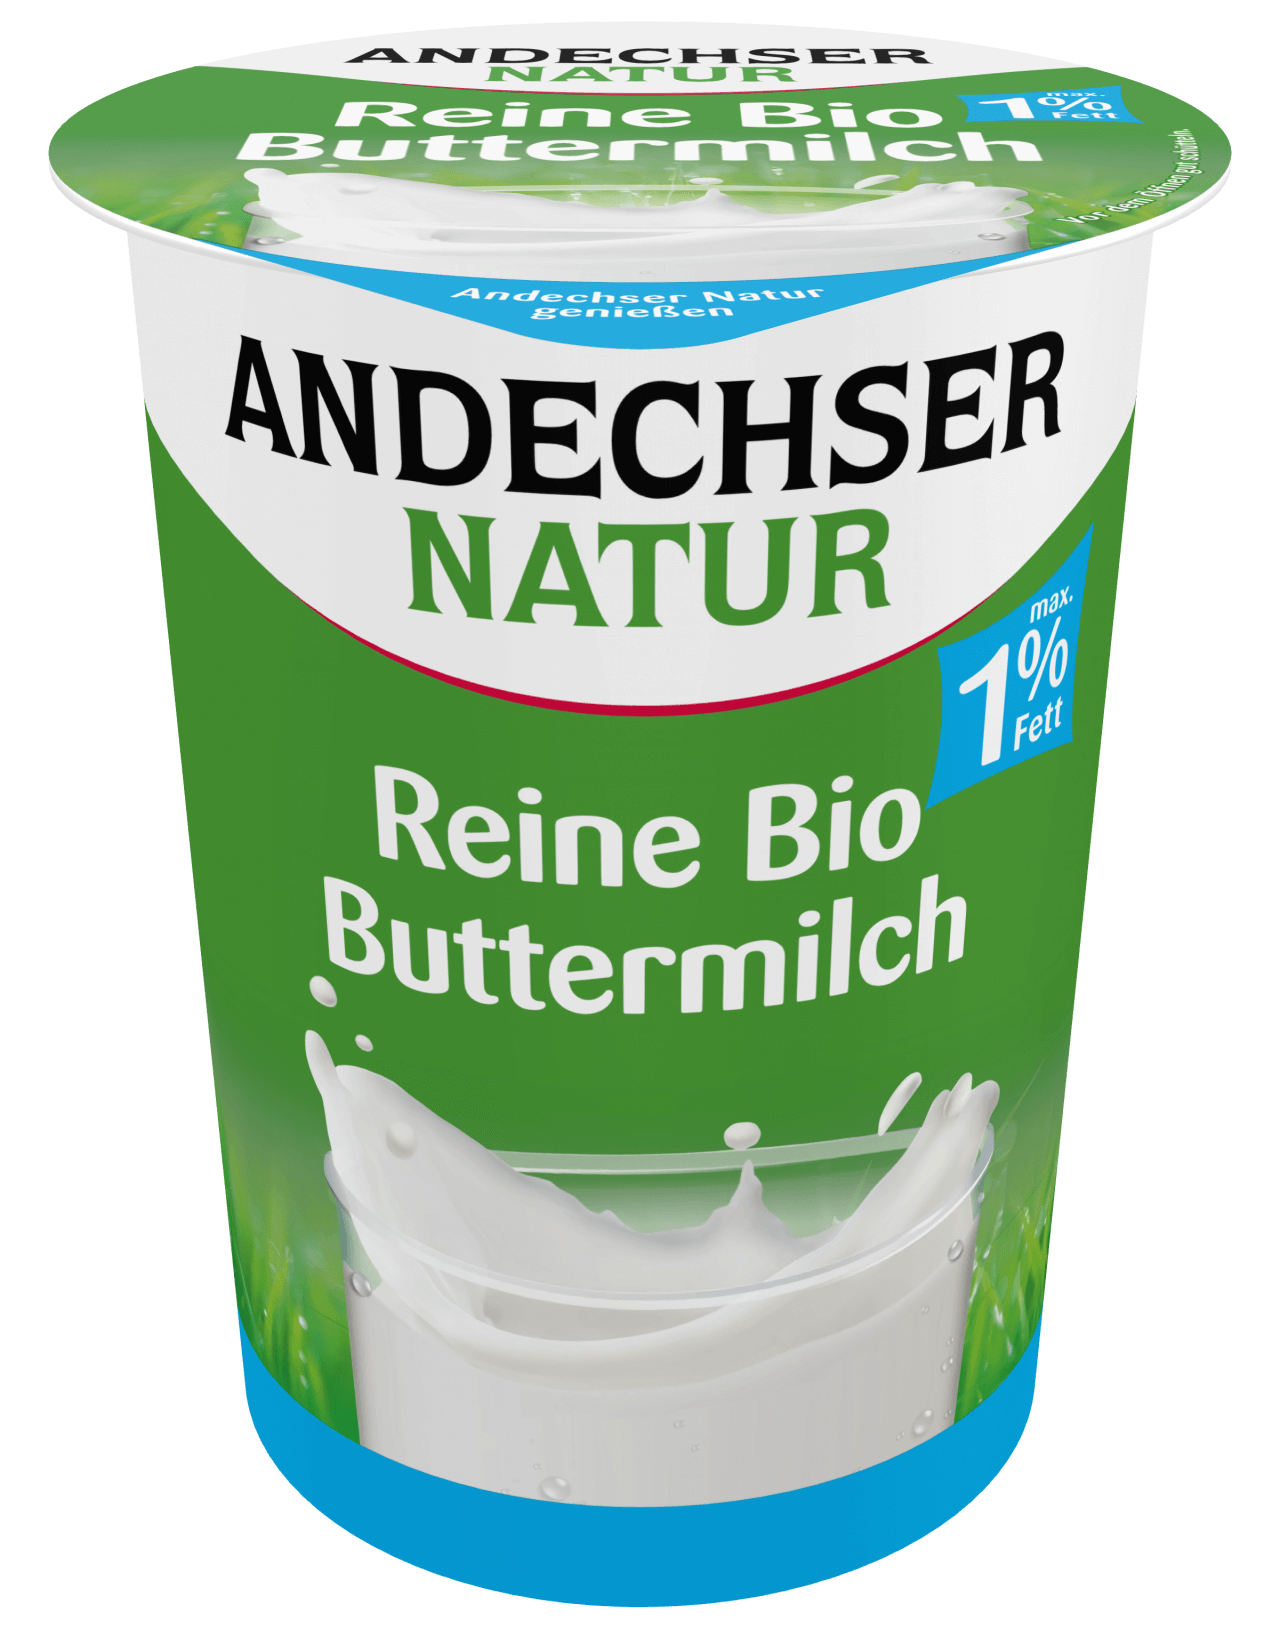 ANDECHSER NATUR Reine Bio-Buttermilch